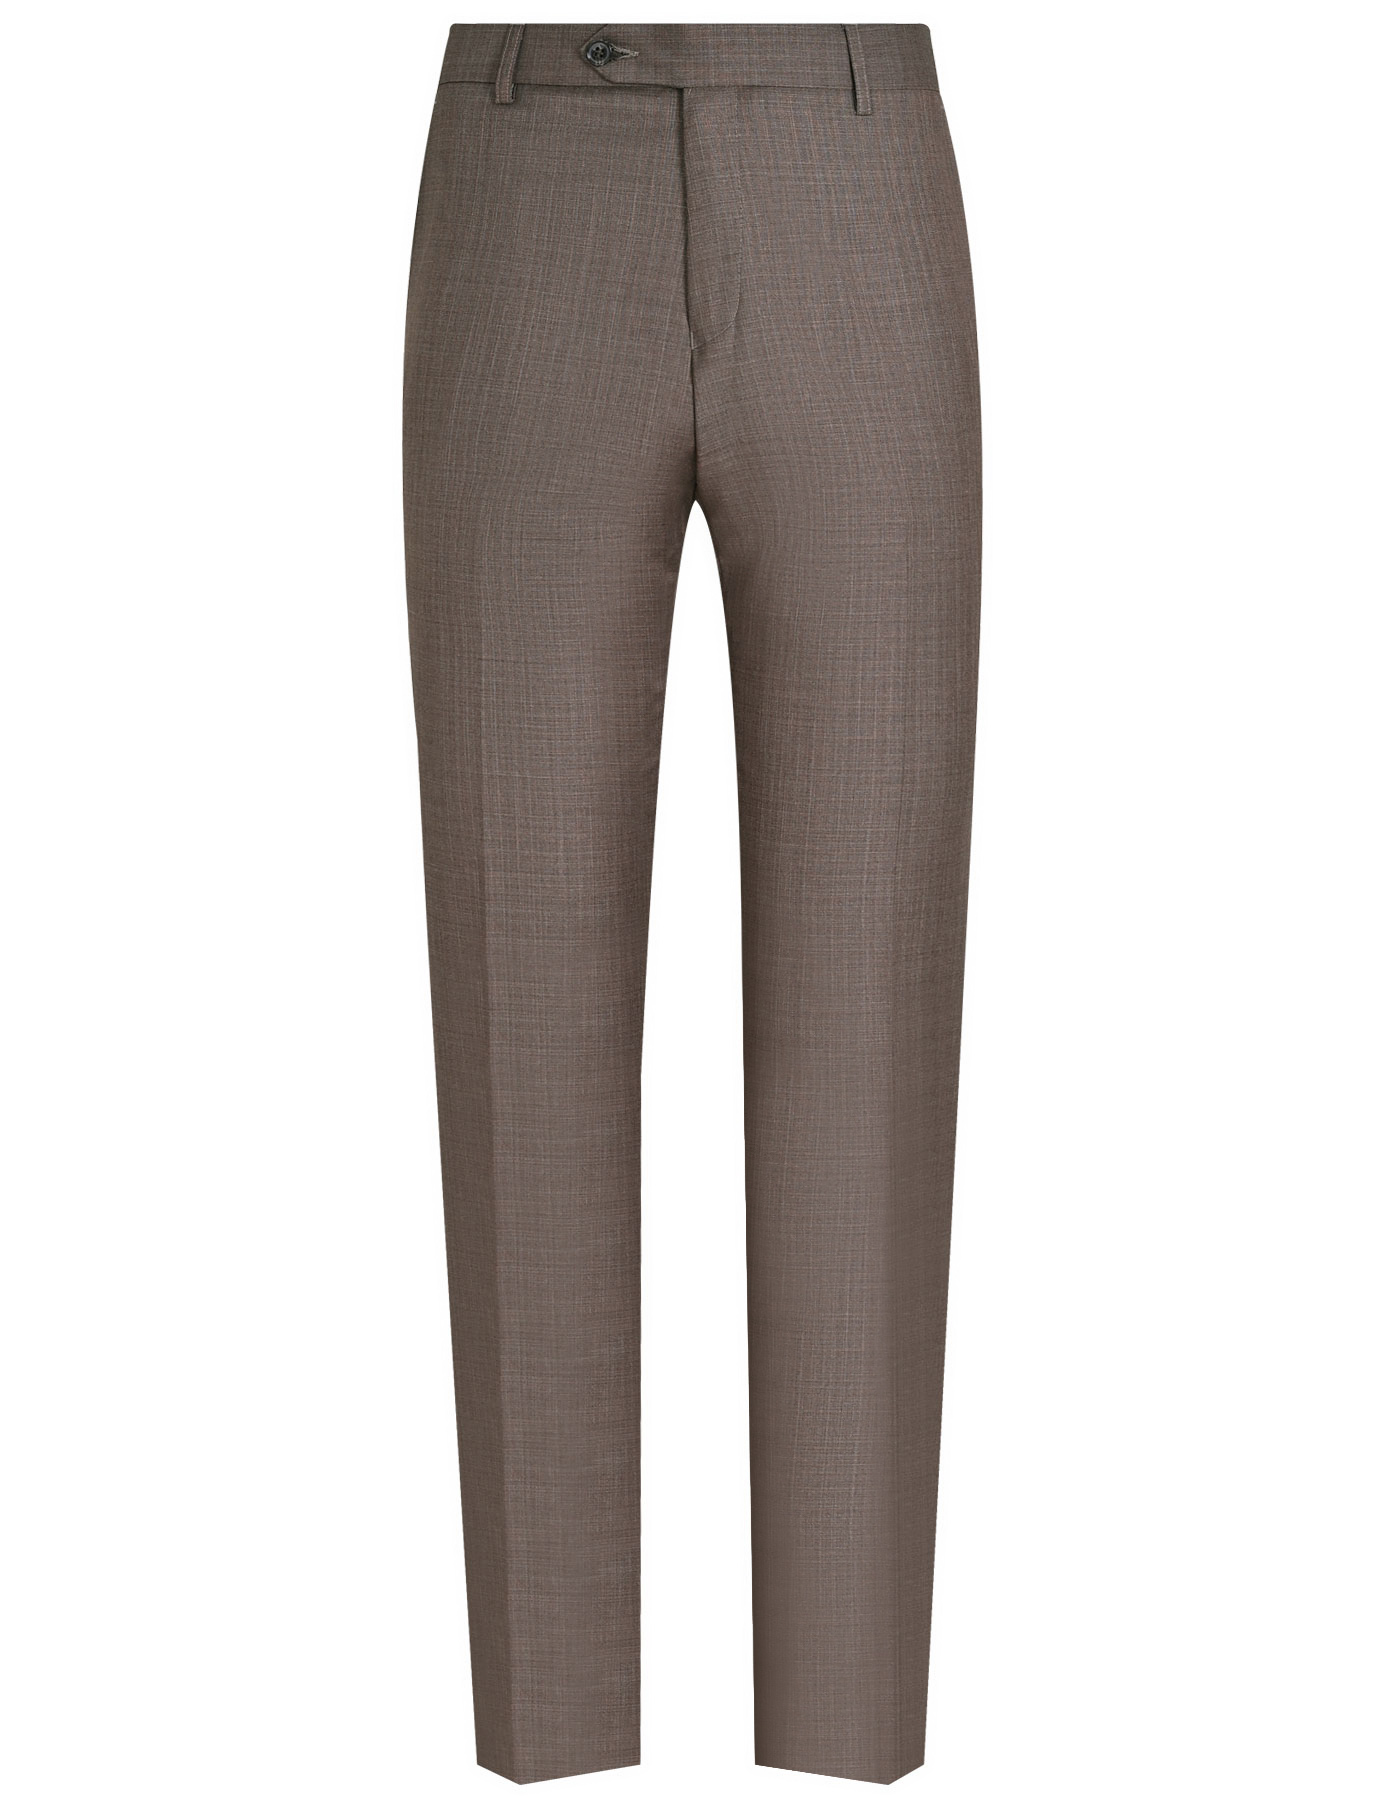 Suit Brown ST2370S Uniworth 2 Pcs Suit